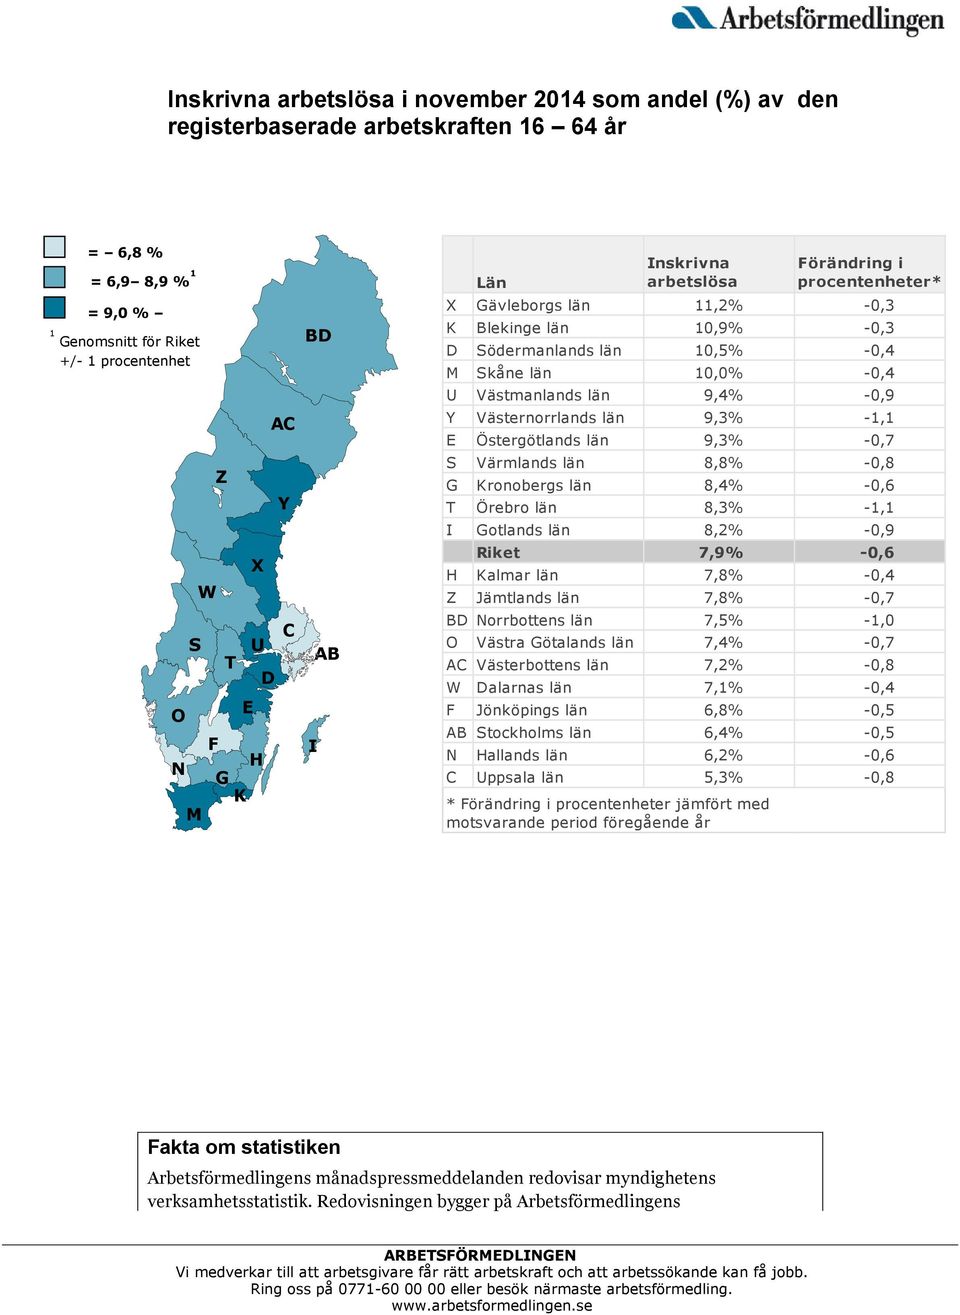 9,4% -0,9 Y Västernorrlands län 9,3% -1,1 E Östergötlands län 9,3% -0,7 S Värmlands län 8,8% -0,8 G Kronobergs län 8,4% -0,6 T Örebro län 8,3% -1,1 I Gotlands län 8,2% -0,9 Riket 7,9% -0,6 H Kalmar